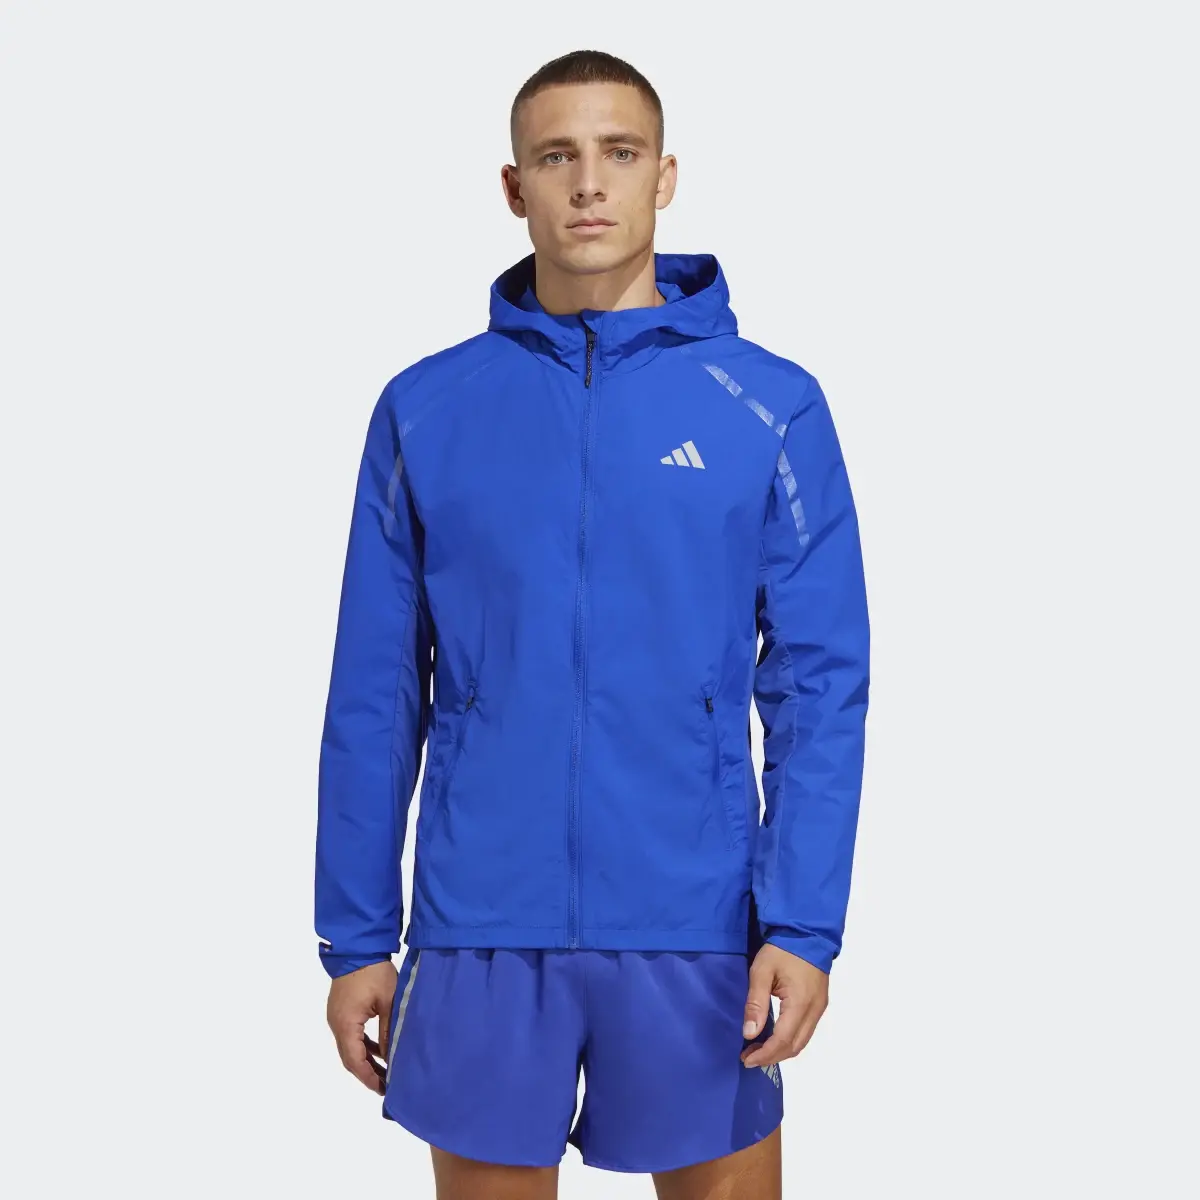 Adidas Marathon Warm-Up Jacket. 2